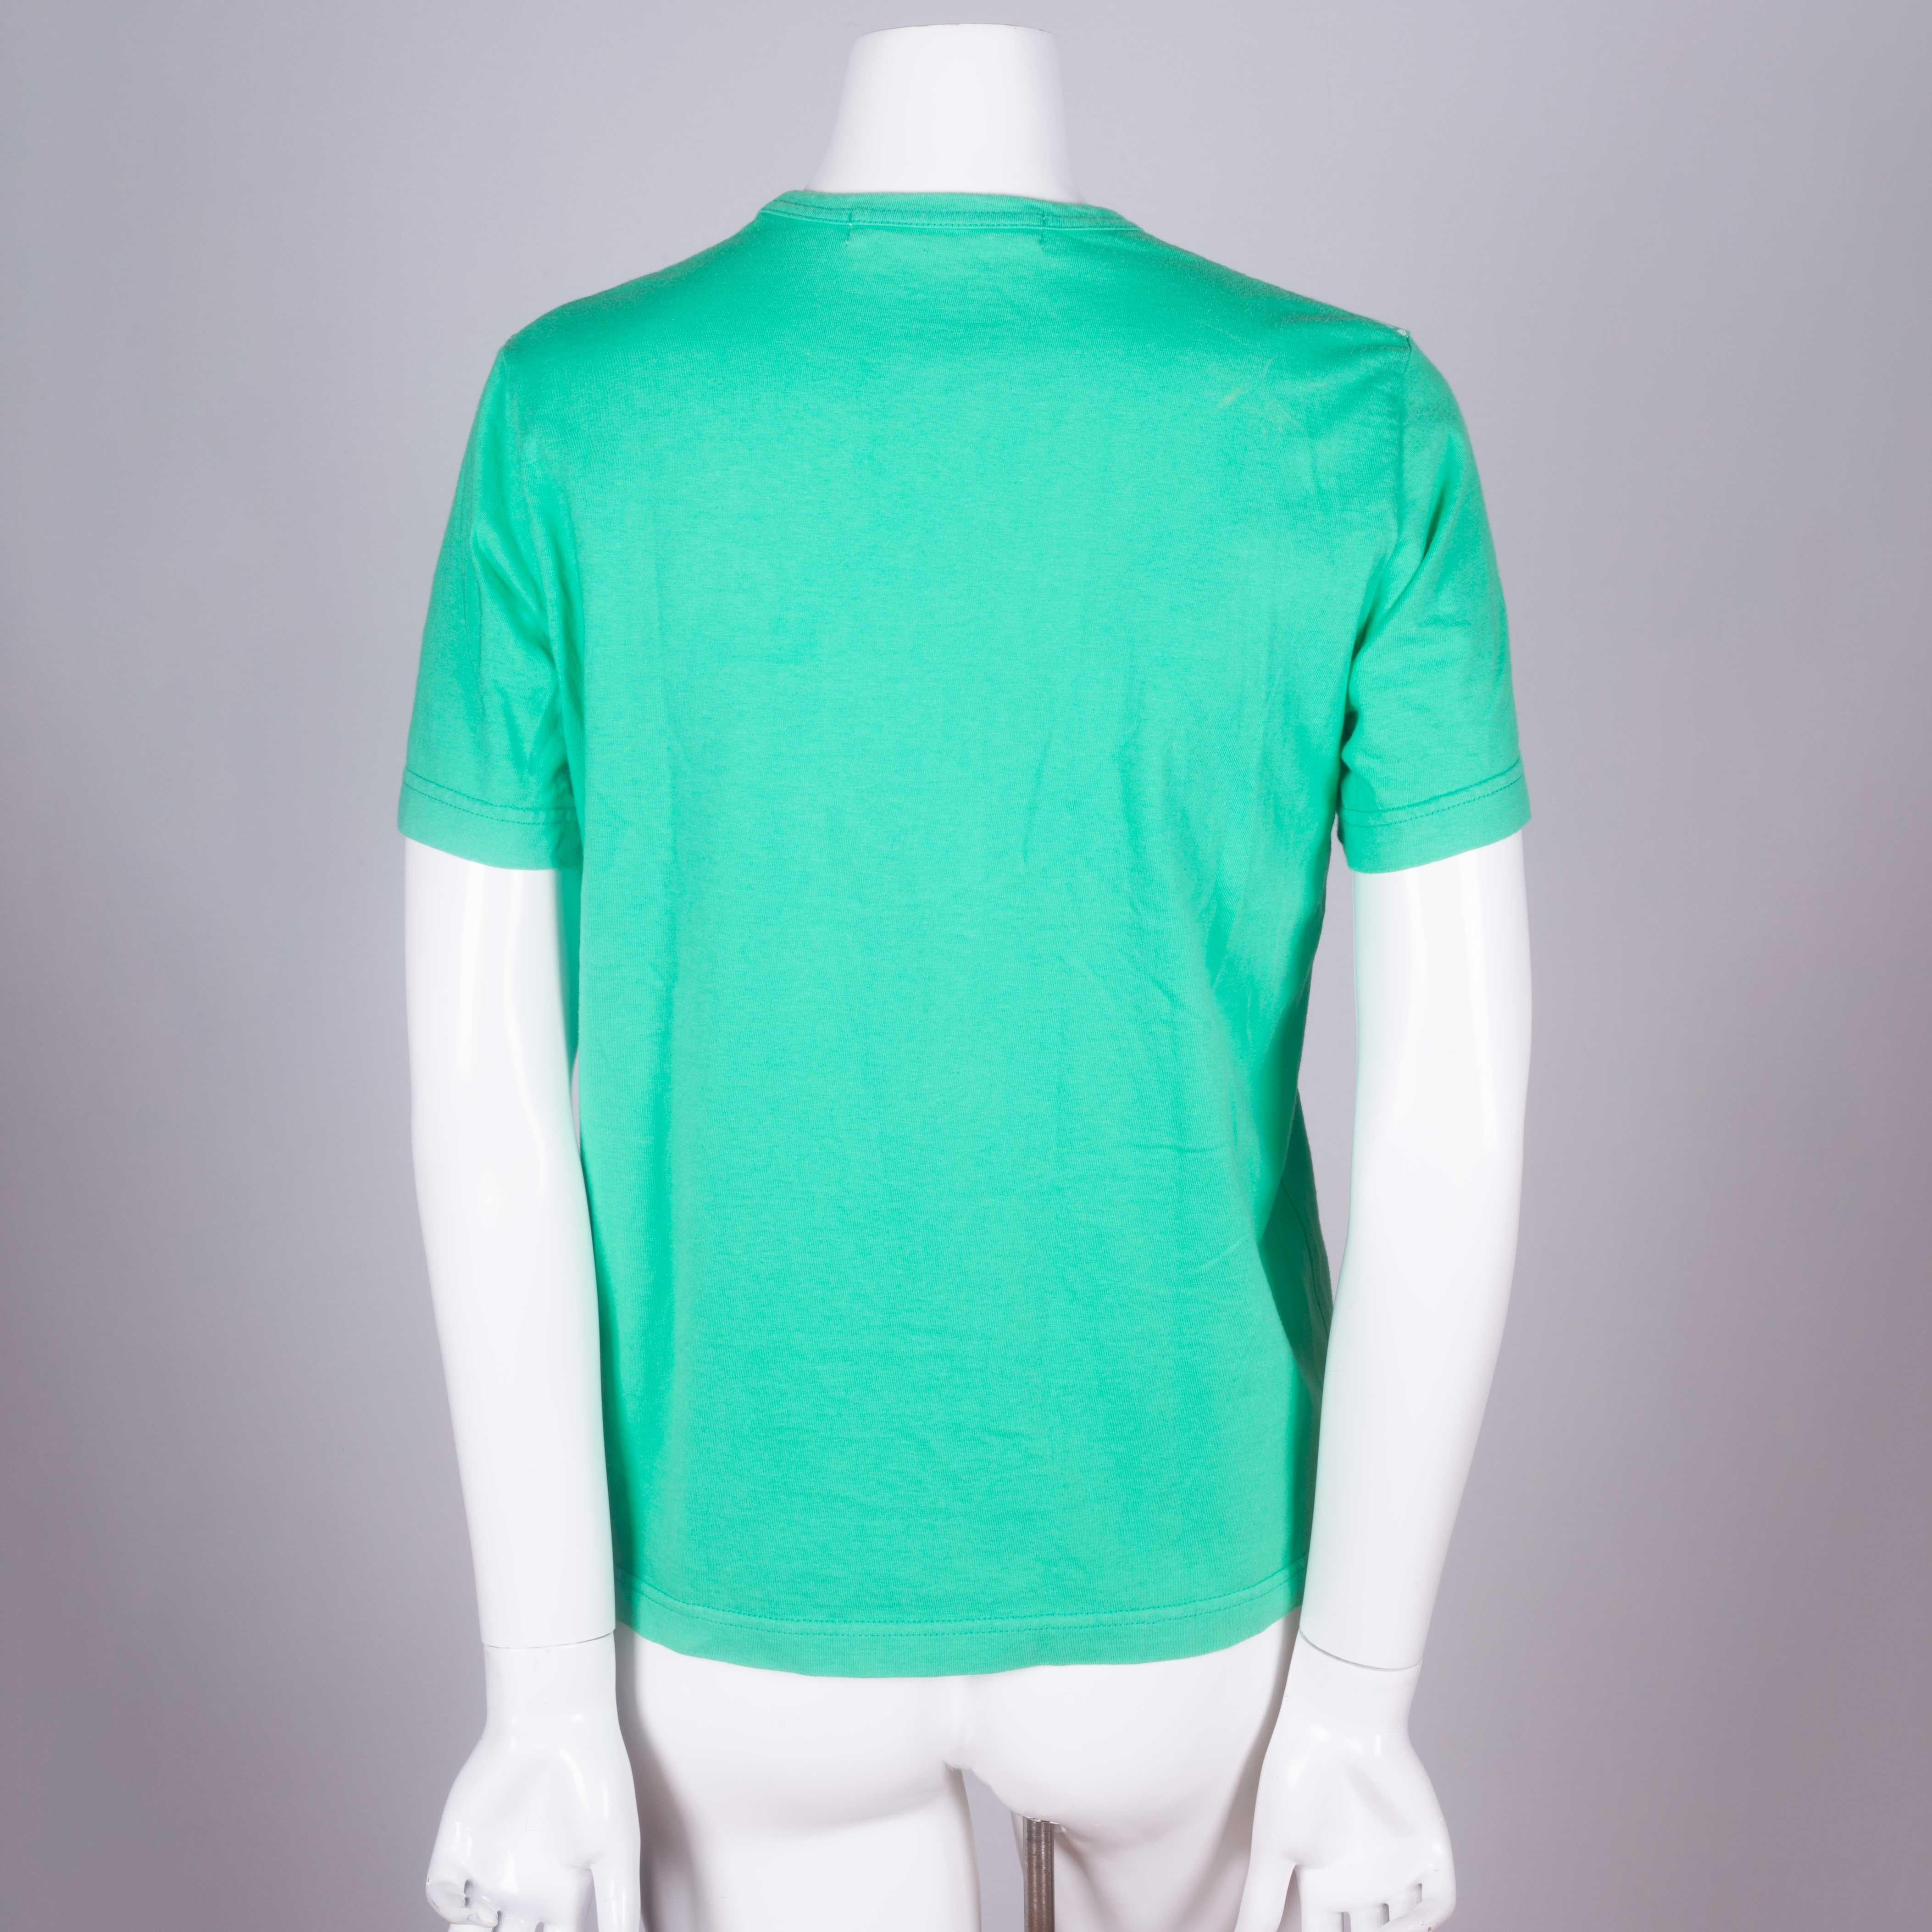 Women's or Men's Comme des Garçons Green T-shirt with Lace Motif, 2006